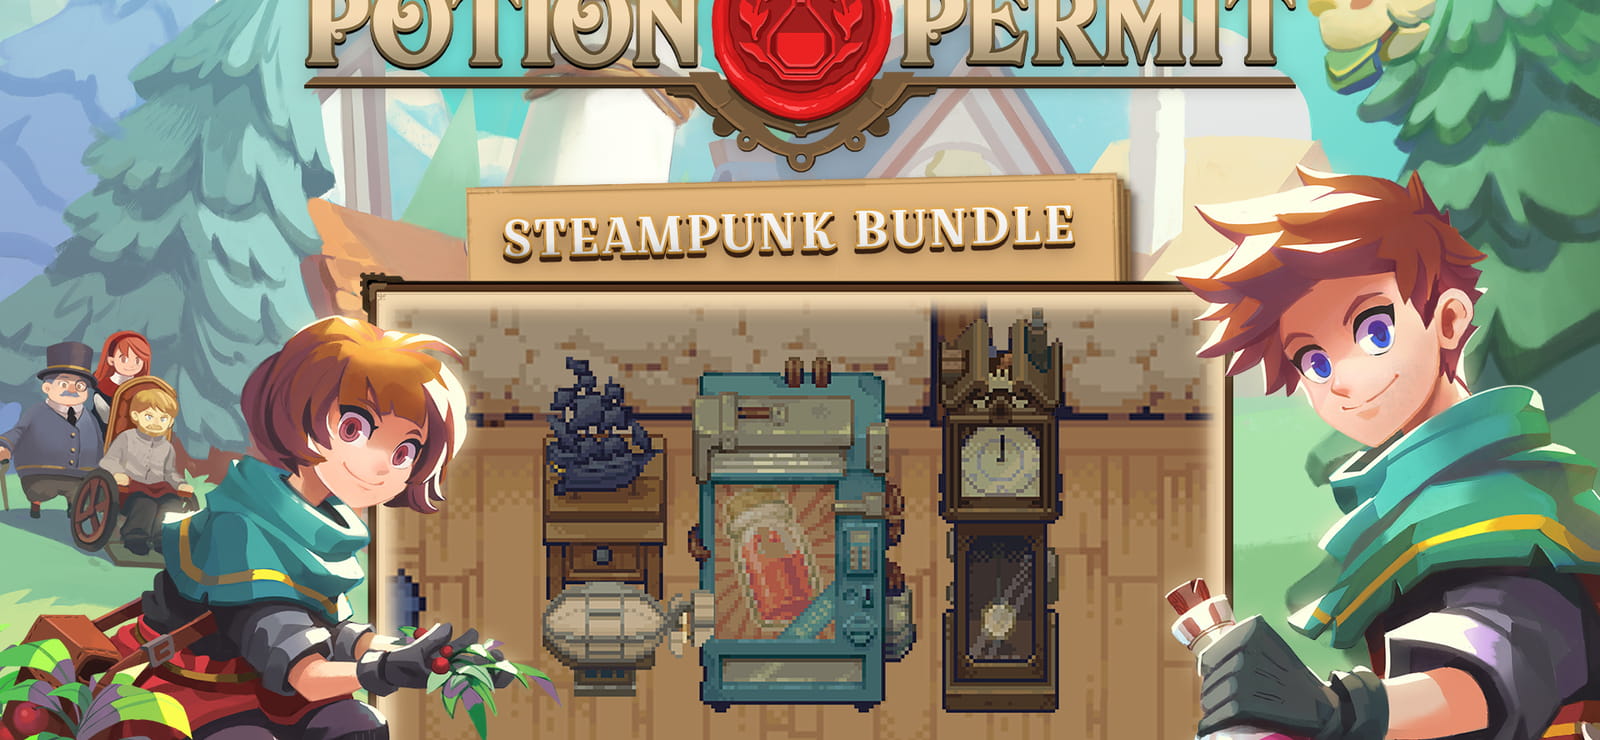 Potion Permit - Steampunk Bundle